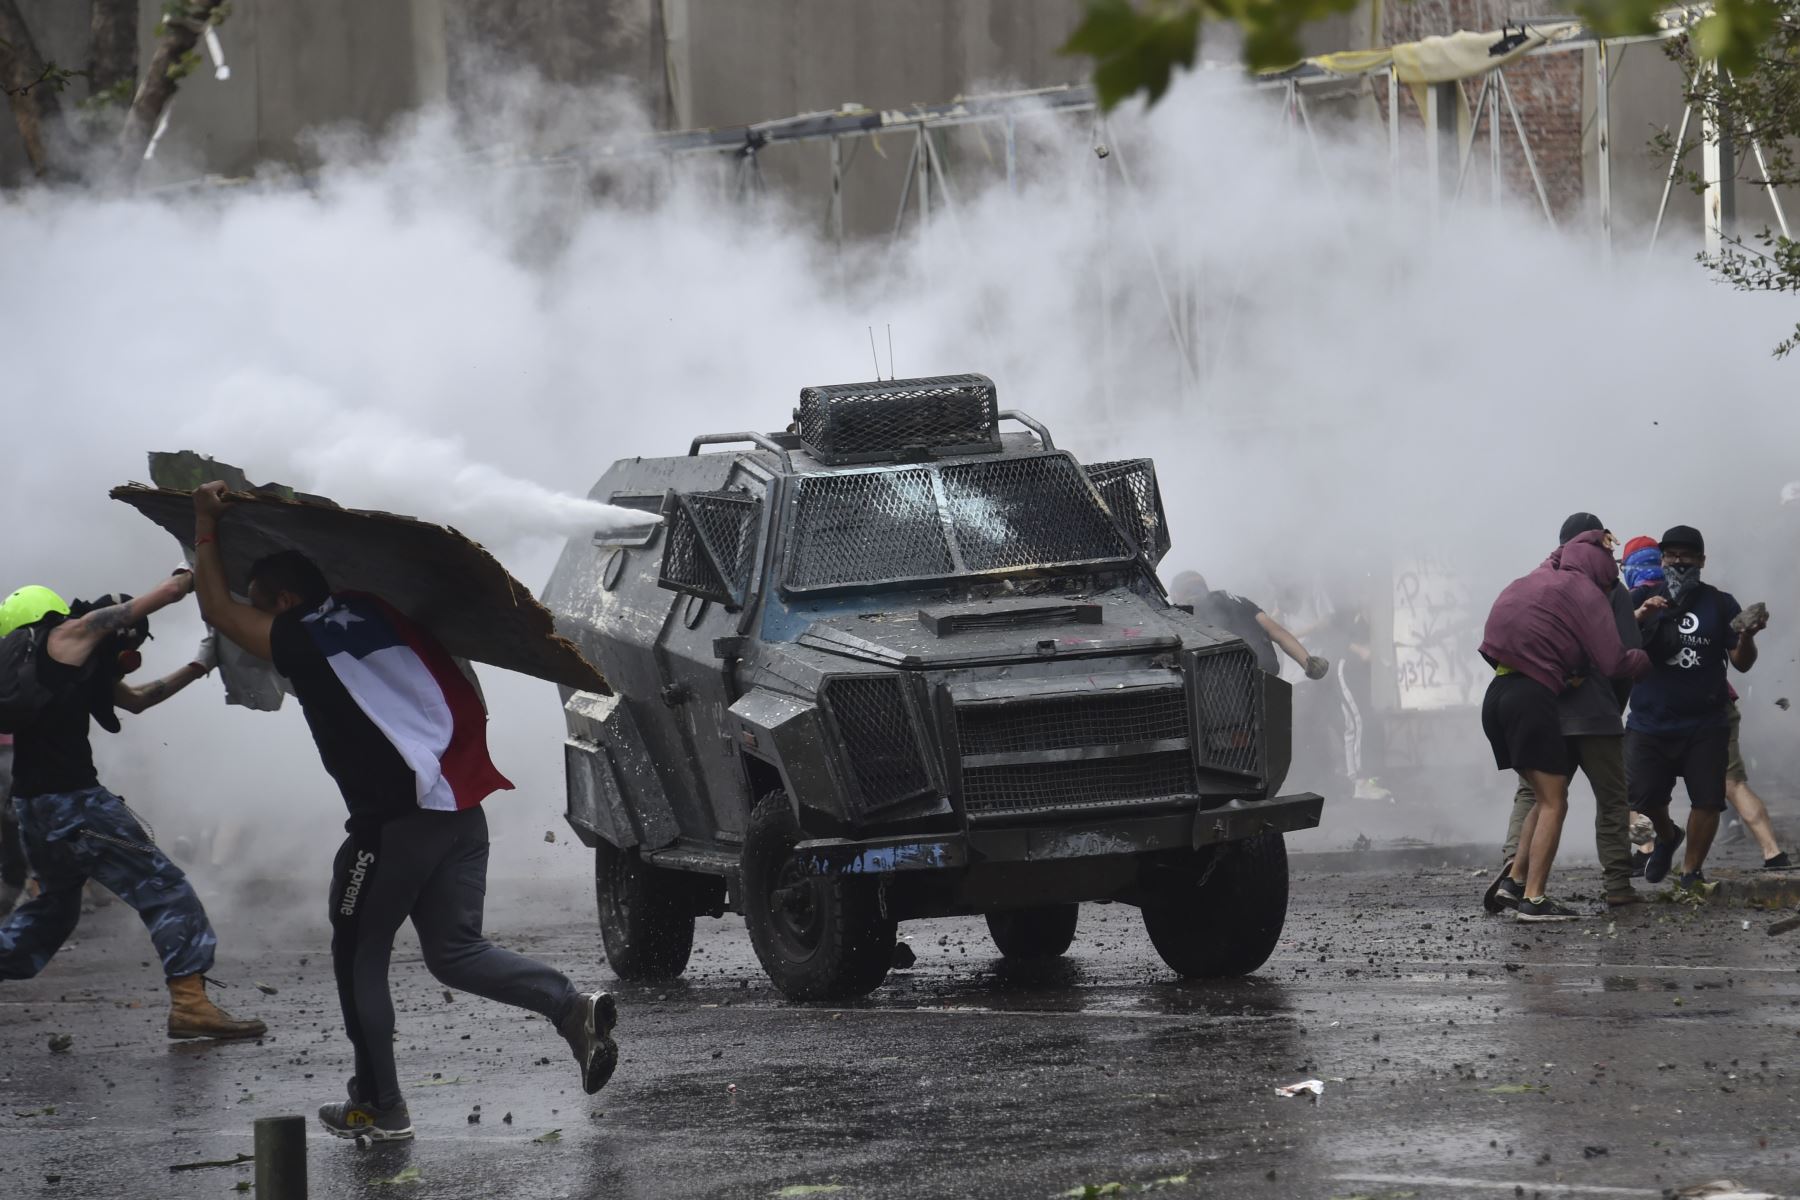 Los manifestantes se enfrentan con la policía antidisturbios en Santiago en la cuarta semana de protestas contra el gobierno del presidente chileno Sebastián Piñera.
Foto: AFP